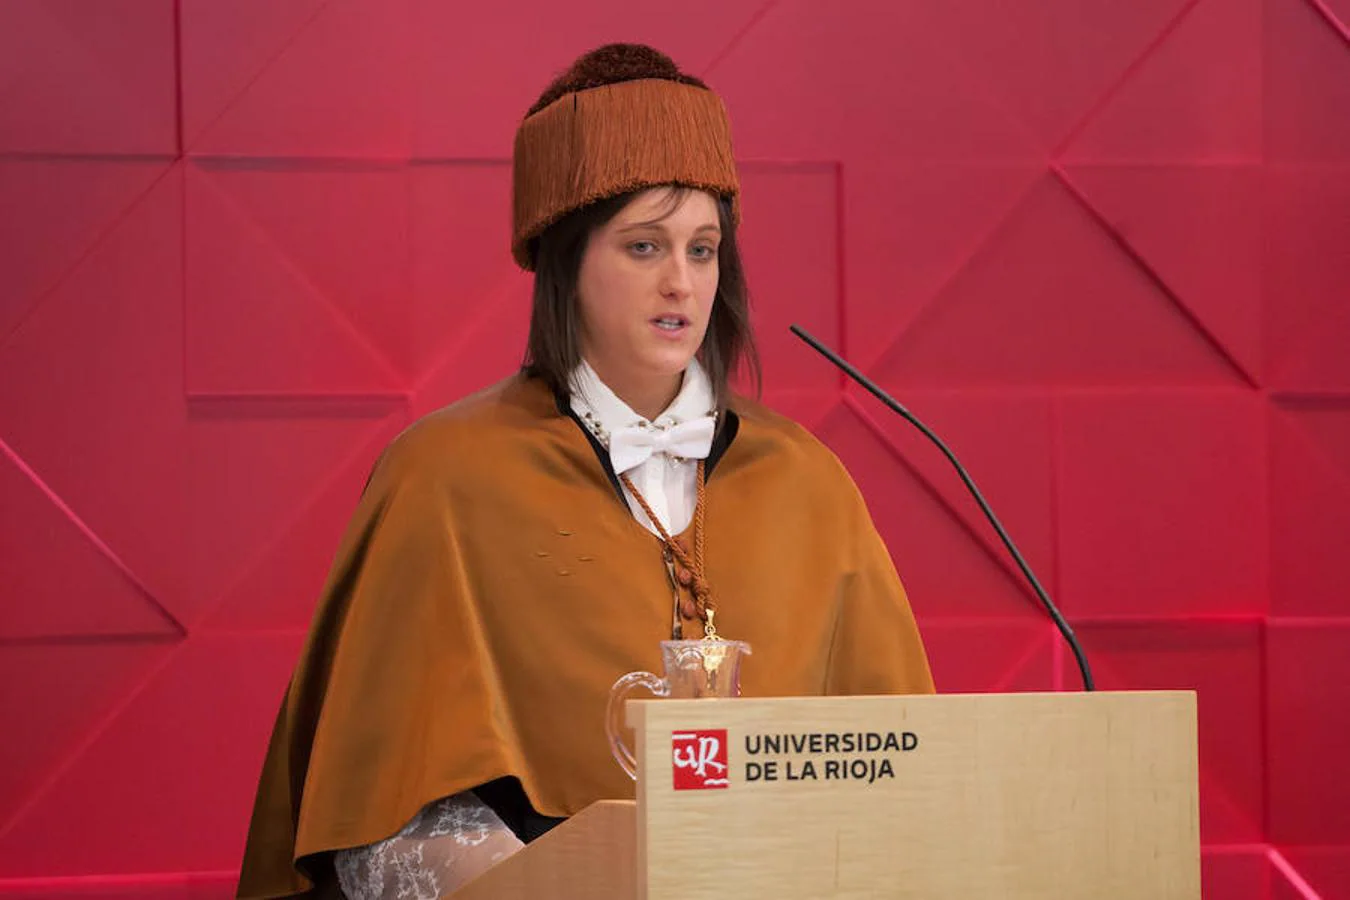 El Aula Magna del Edificio Quintiliano ha albergado el acto de investidura de los nuevos doctores y entrega de los Premios Extraordinarios de Doctorado de la Universidad de La Rioja.